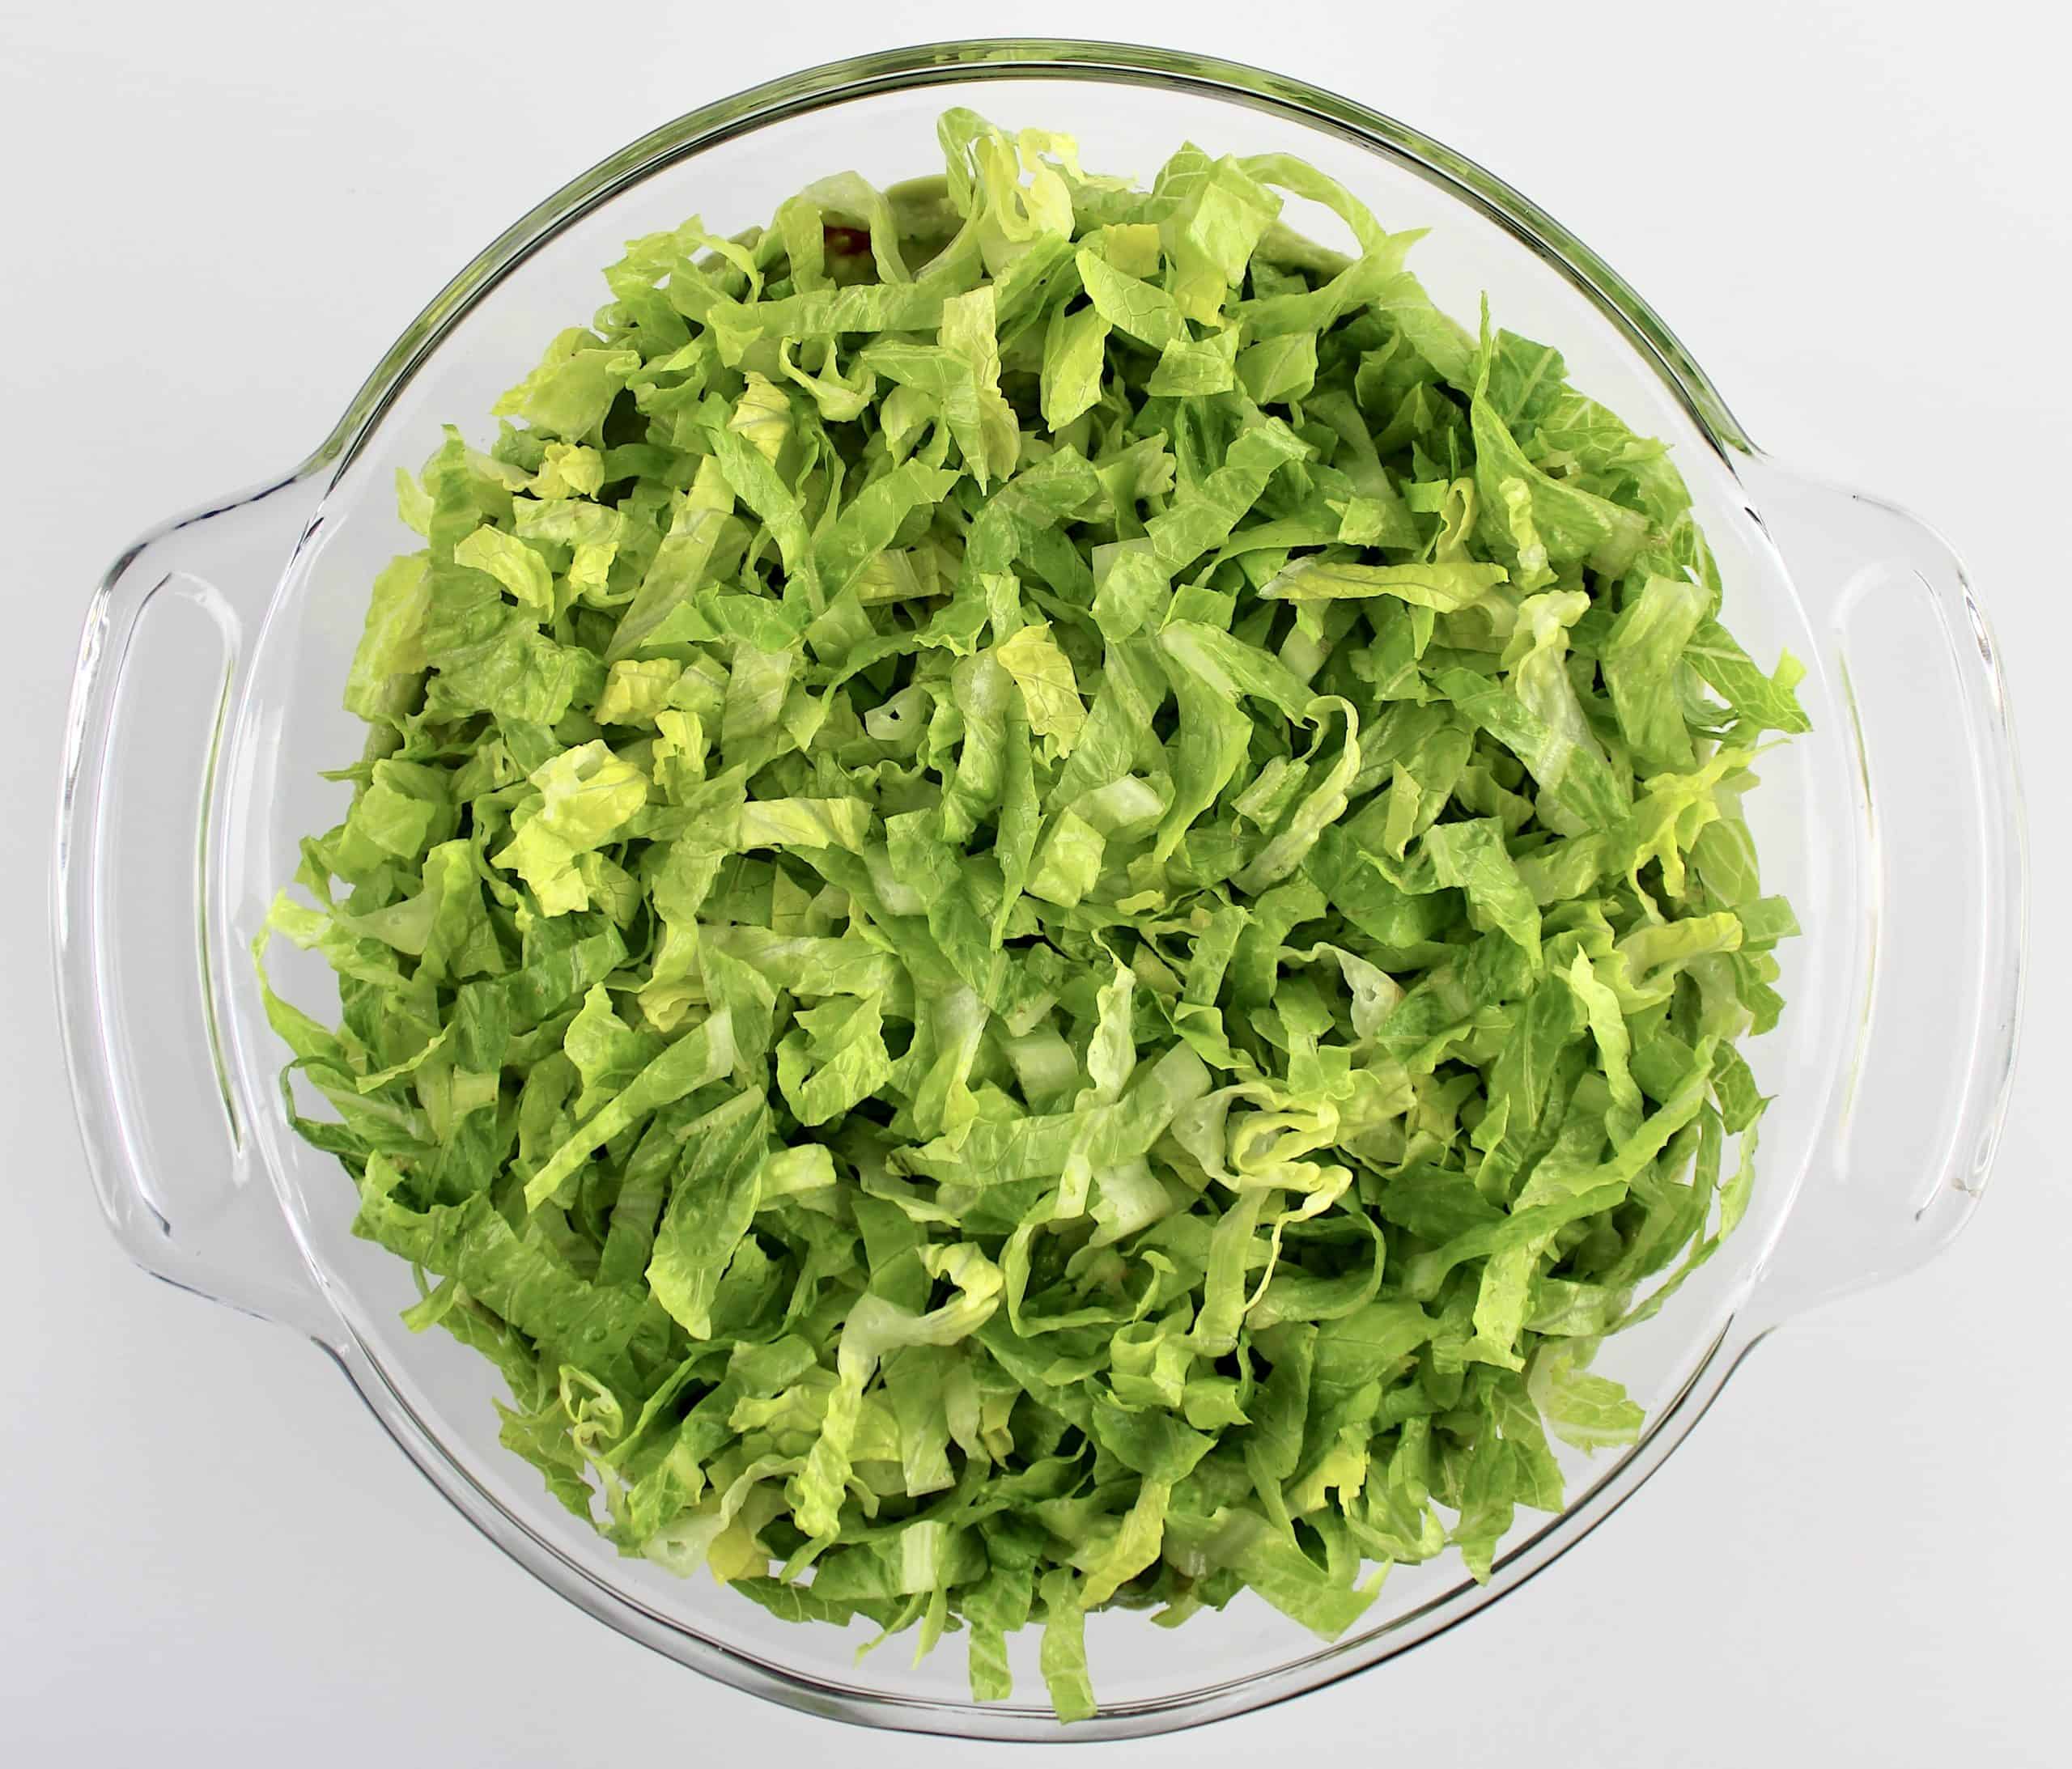 shredded lettuce in glass bowl